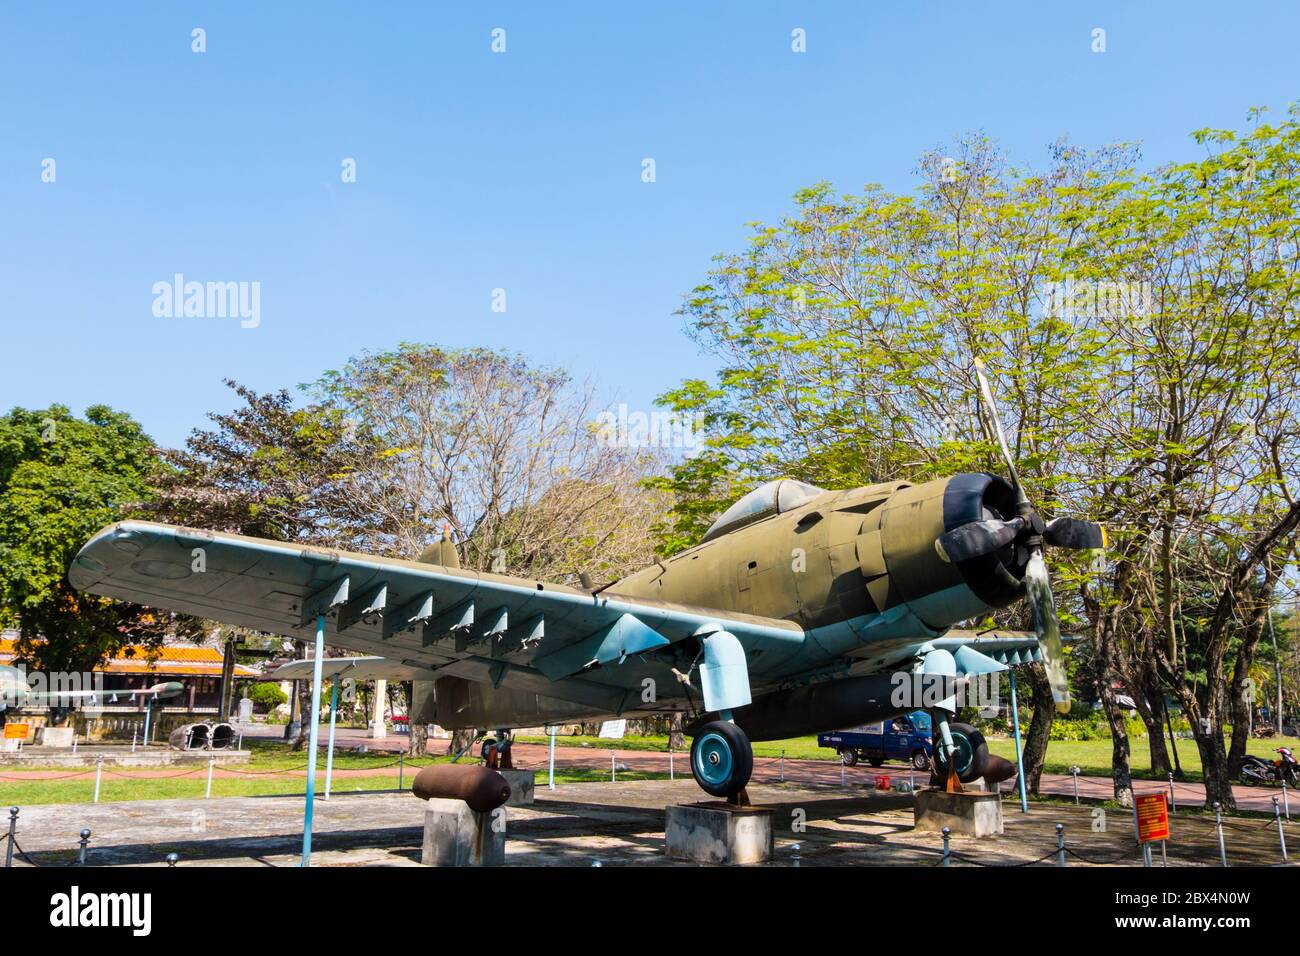 AD-6 Flugzeug Flugzeug, von der US-Armee im Vietnamkrieg verwendet, beschlagnahmt 1975, Thua Thien Hue History Museum, Hue war Museum, Hue, Vietnam Stockfoto